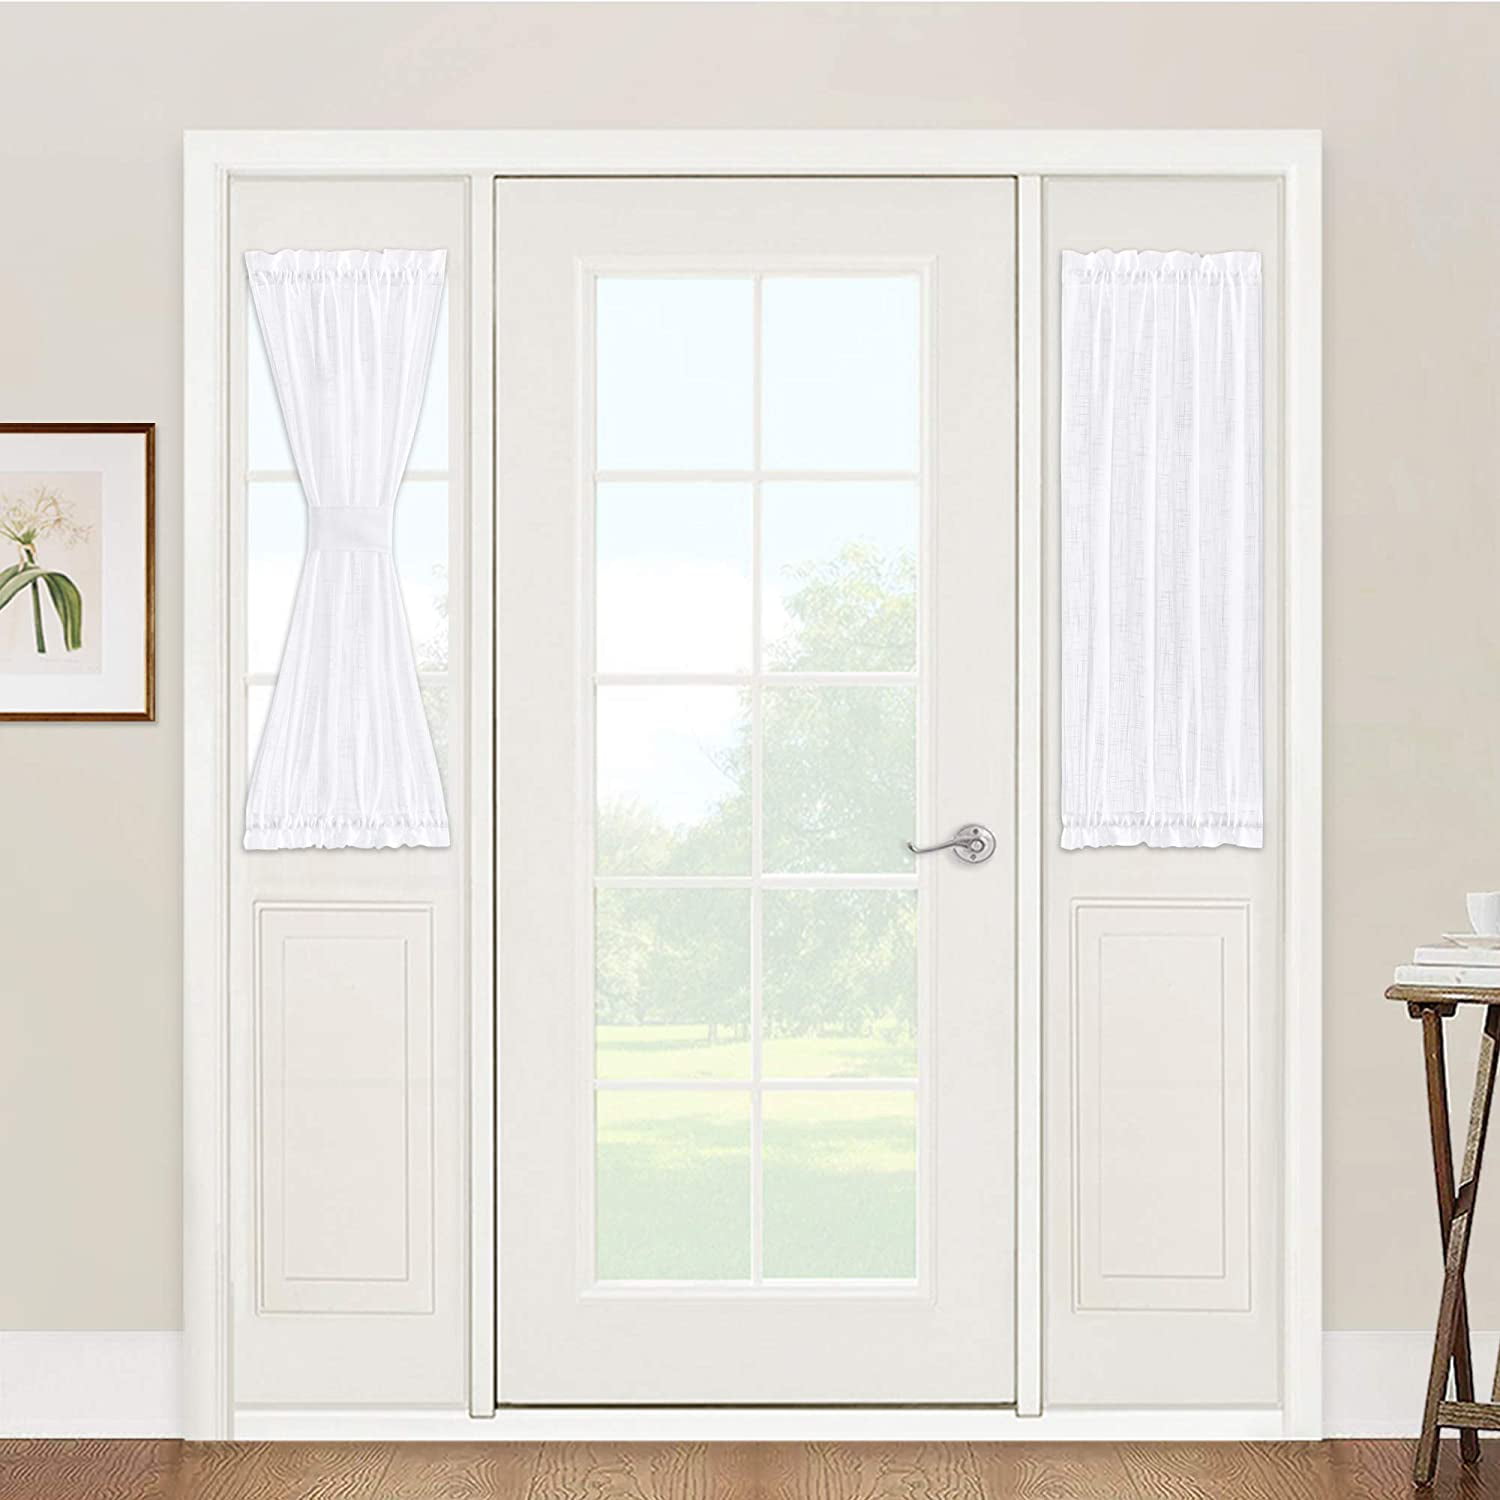 Sidelight Panels Door Window Treatments, Curtains On Front Door Window